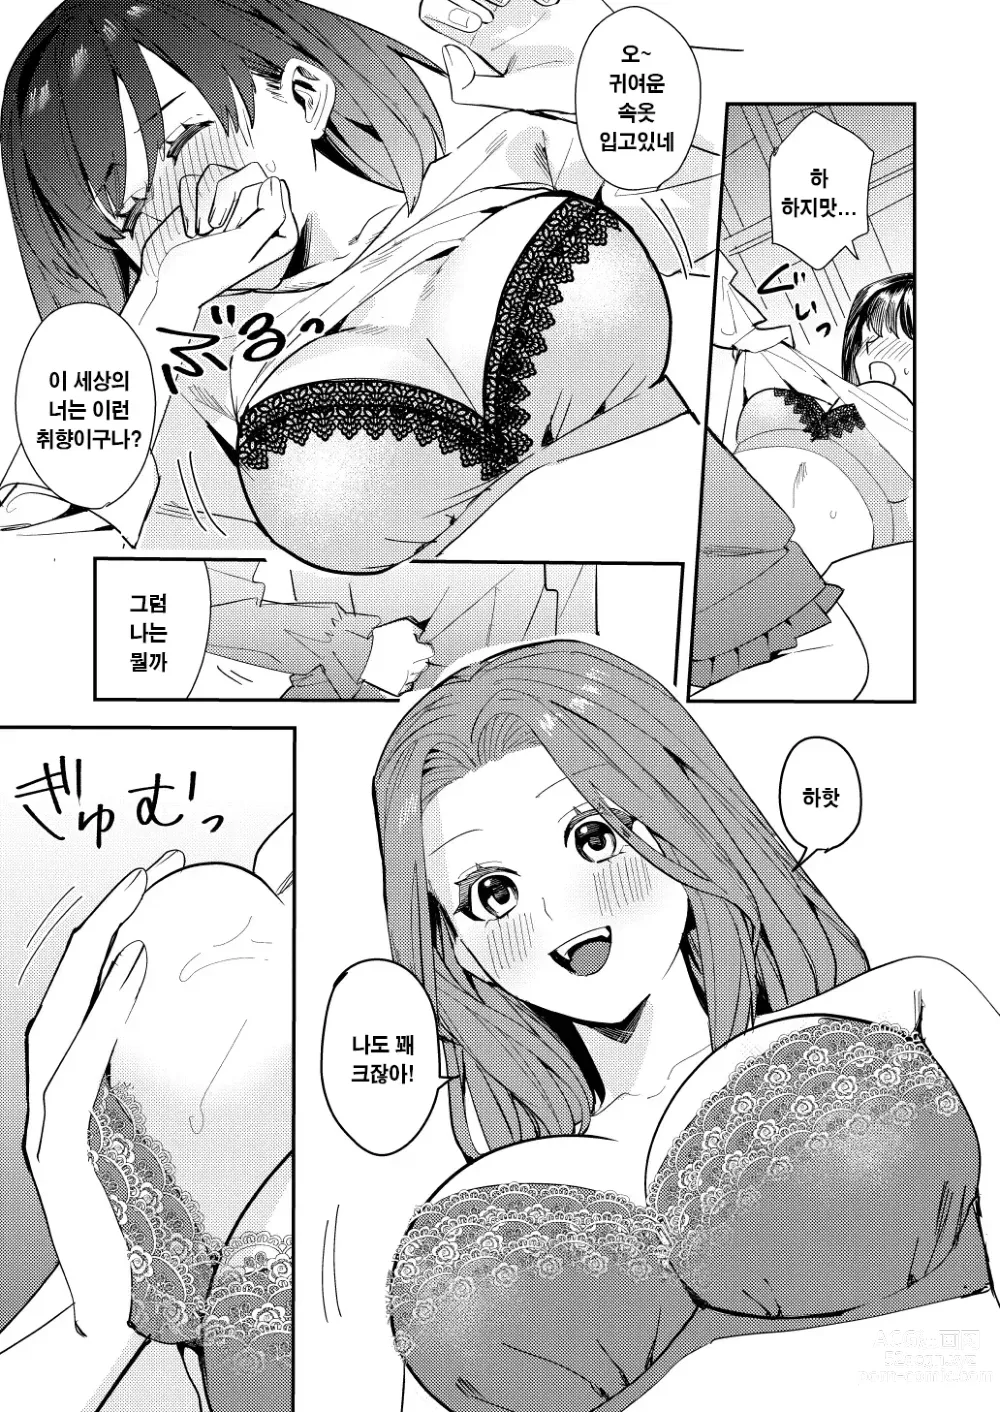 Page 18 of doujinshi 나는 거울의 나라에서 여자로 바뀐다 ~성별 반전 세계에서 여자의 쾌감을 탐하는 이야기~